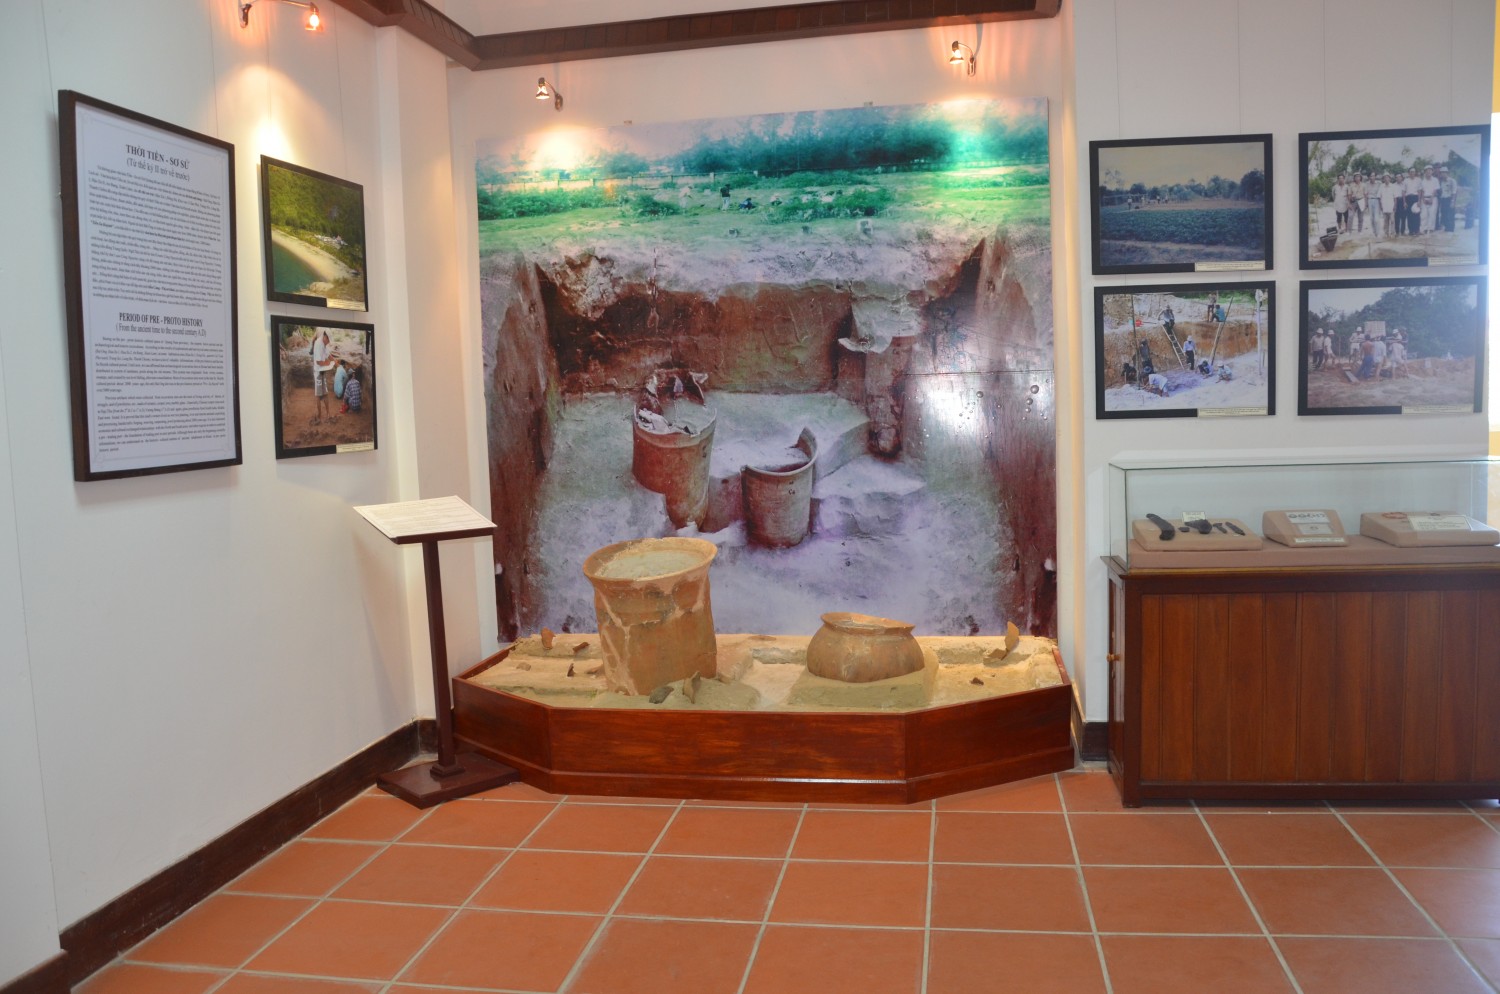 Bảo tàng lịch sử văn hóa Hội An - Minh chứng sống động của thương cảng phồn thịnh một thời 11